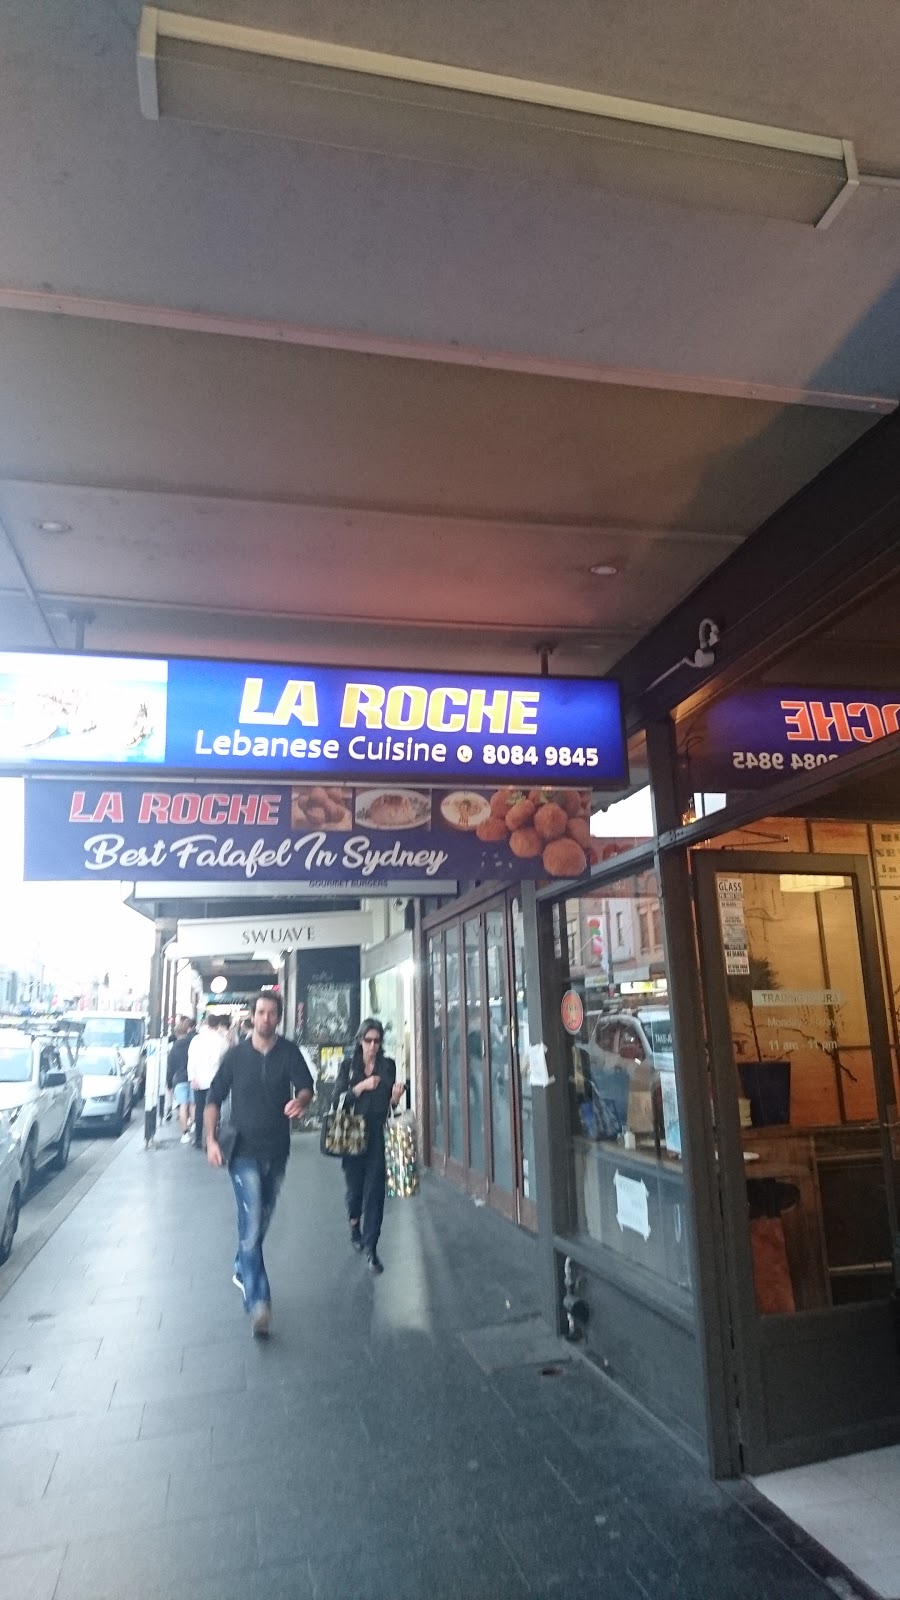 LA ROCHE Lebanese Cuisine | 234 King St, Newtown NSW 2042, Australia | Phone: (02) 8084 9845